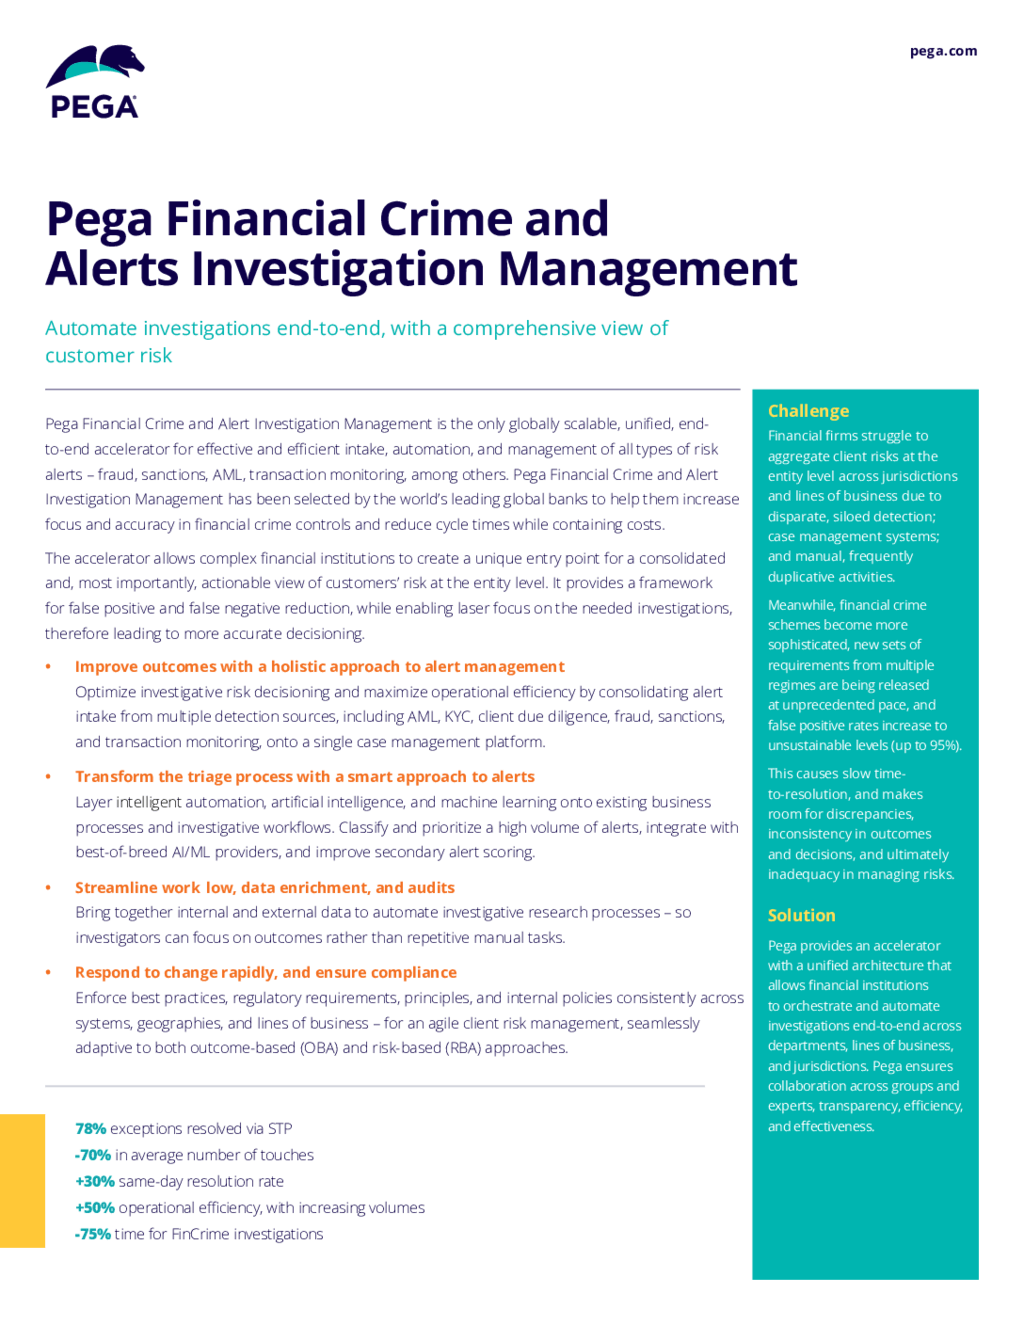 Pega Financial Crime and Alert Investigation Management